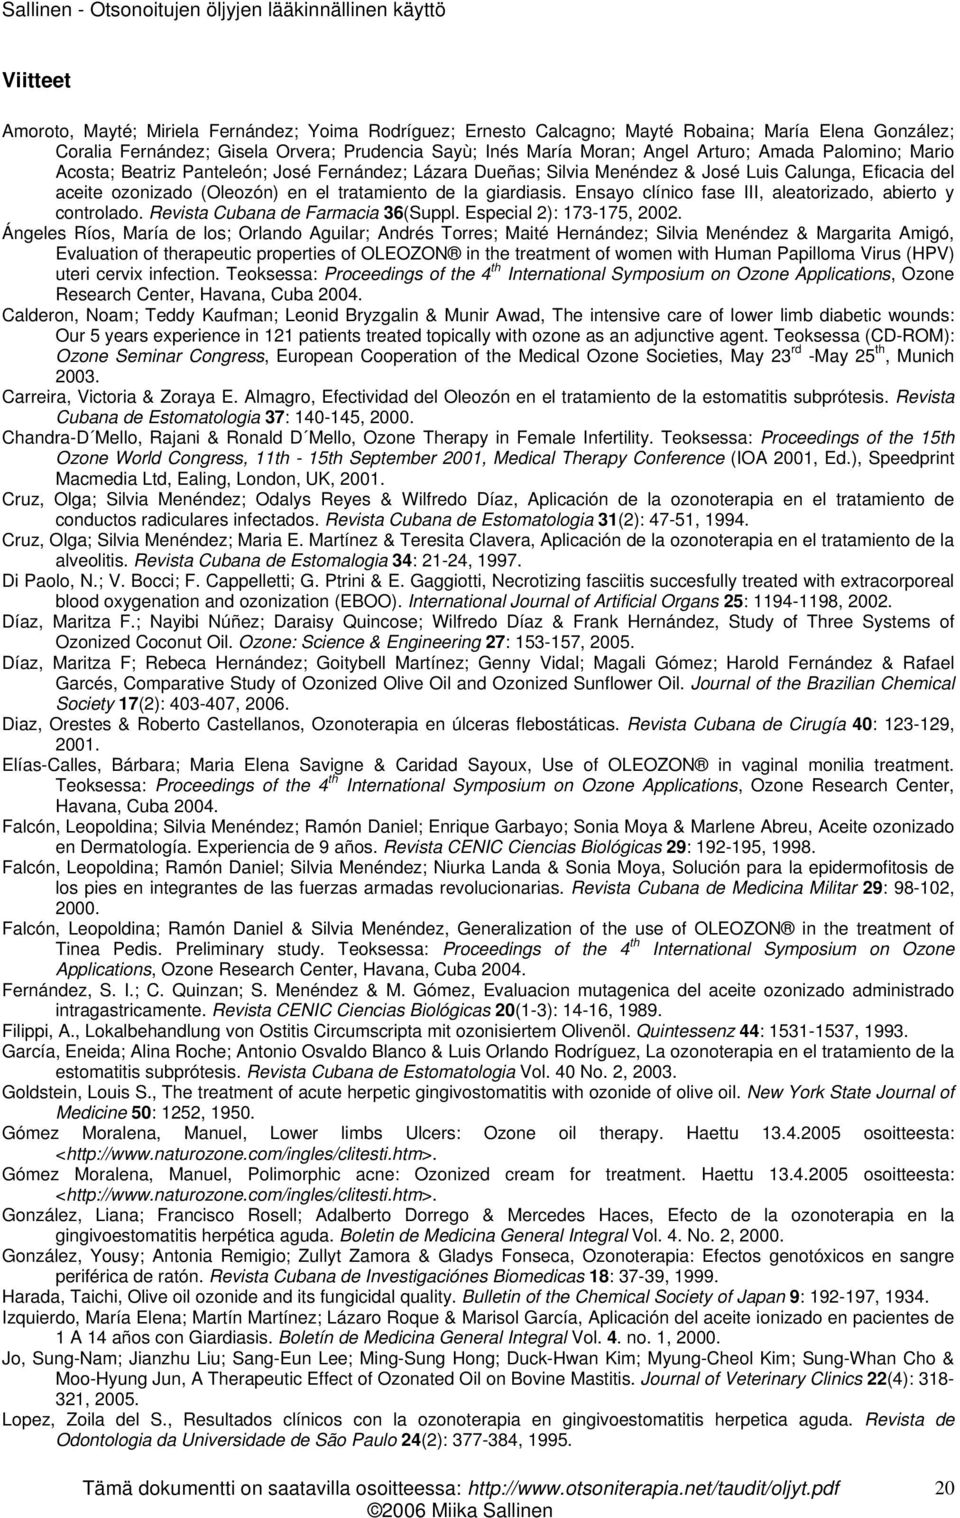 Ensayo clínico fase III, aleatorizado, abierto y controlado. Revista Cubana de Farmacia 36(Suppl. Especial 2): 173-175, 2002.